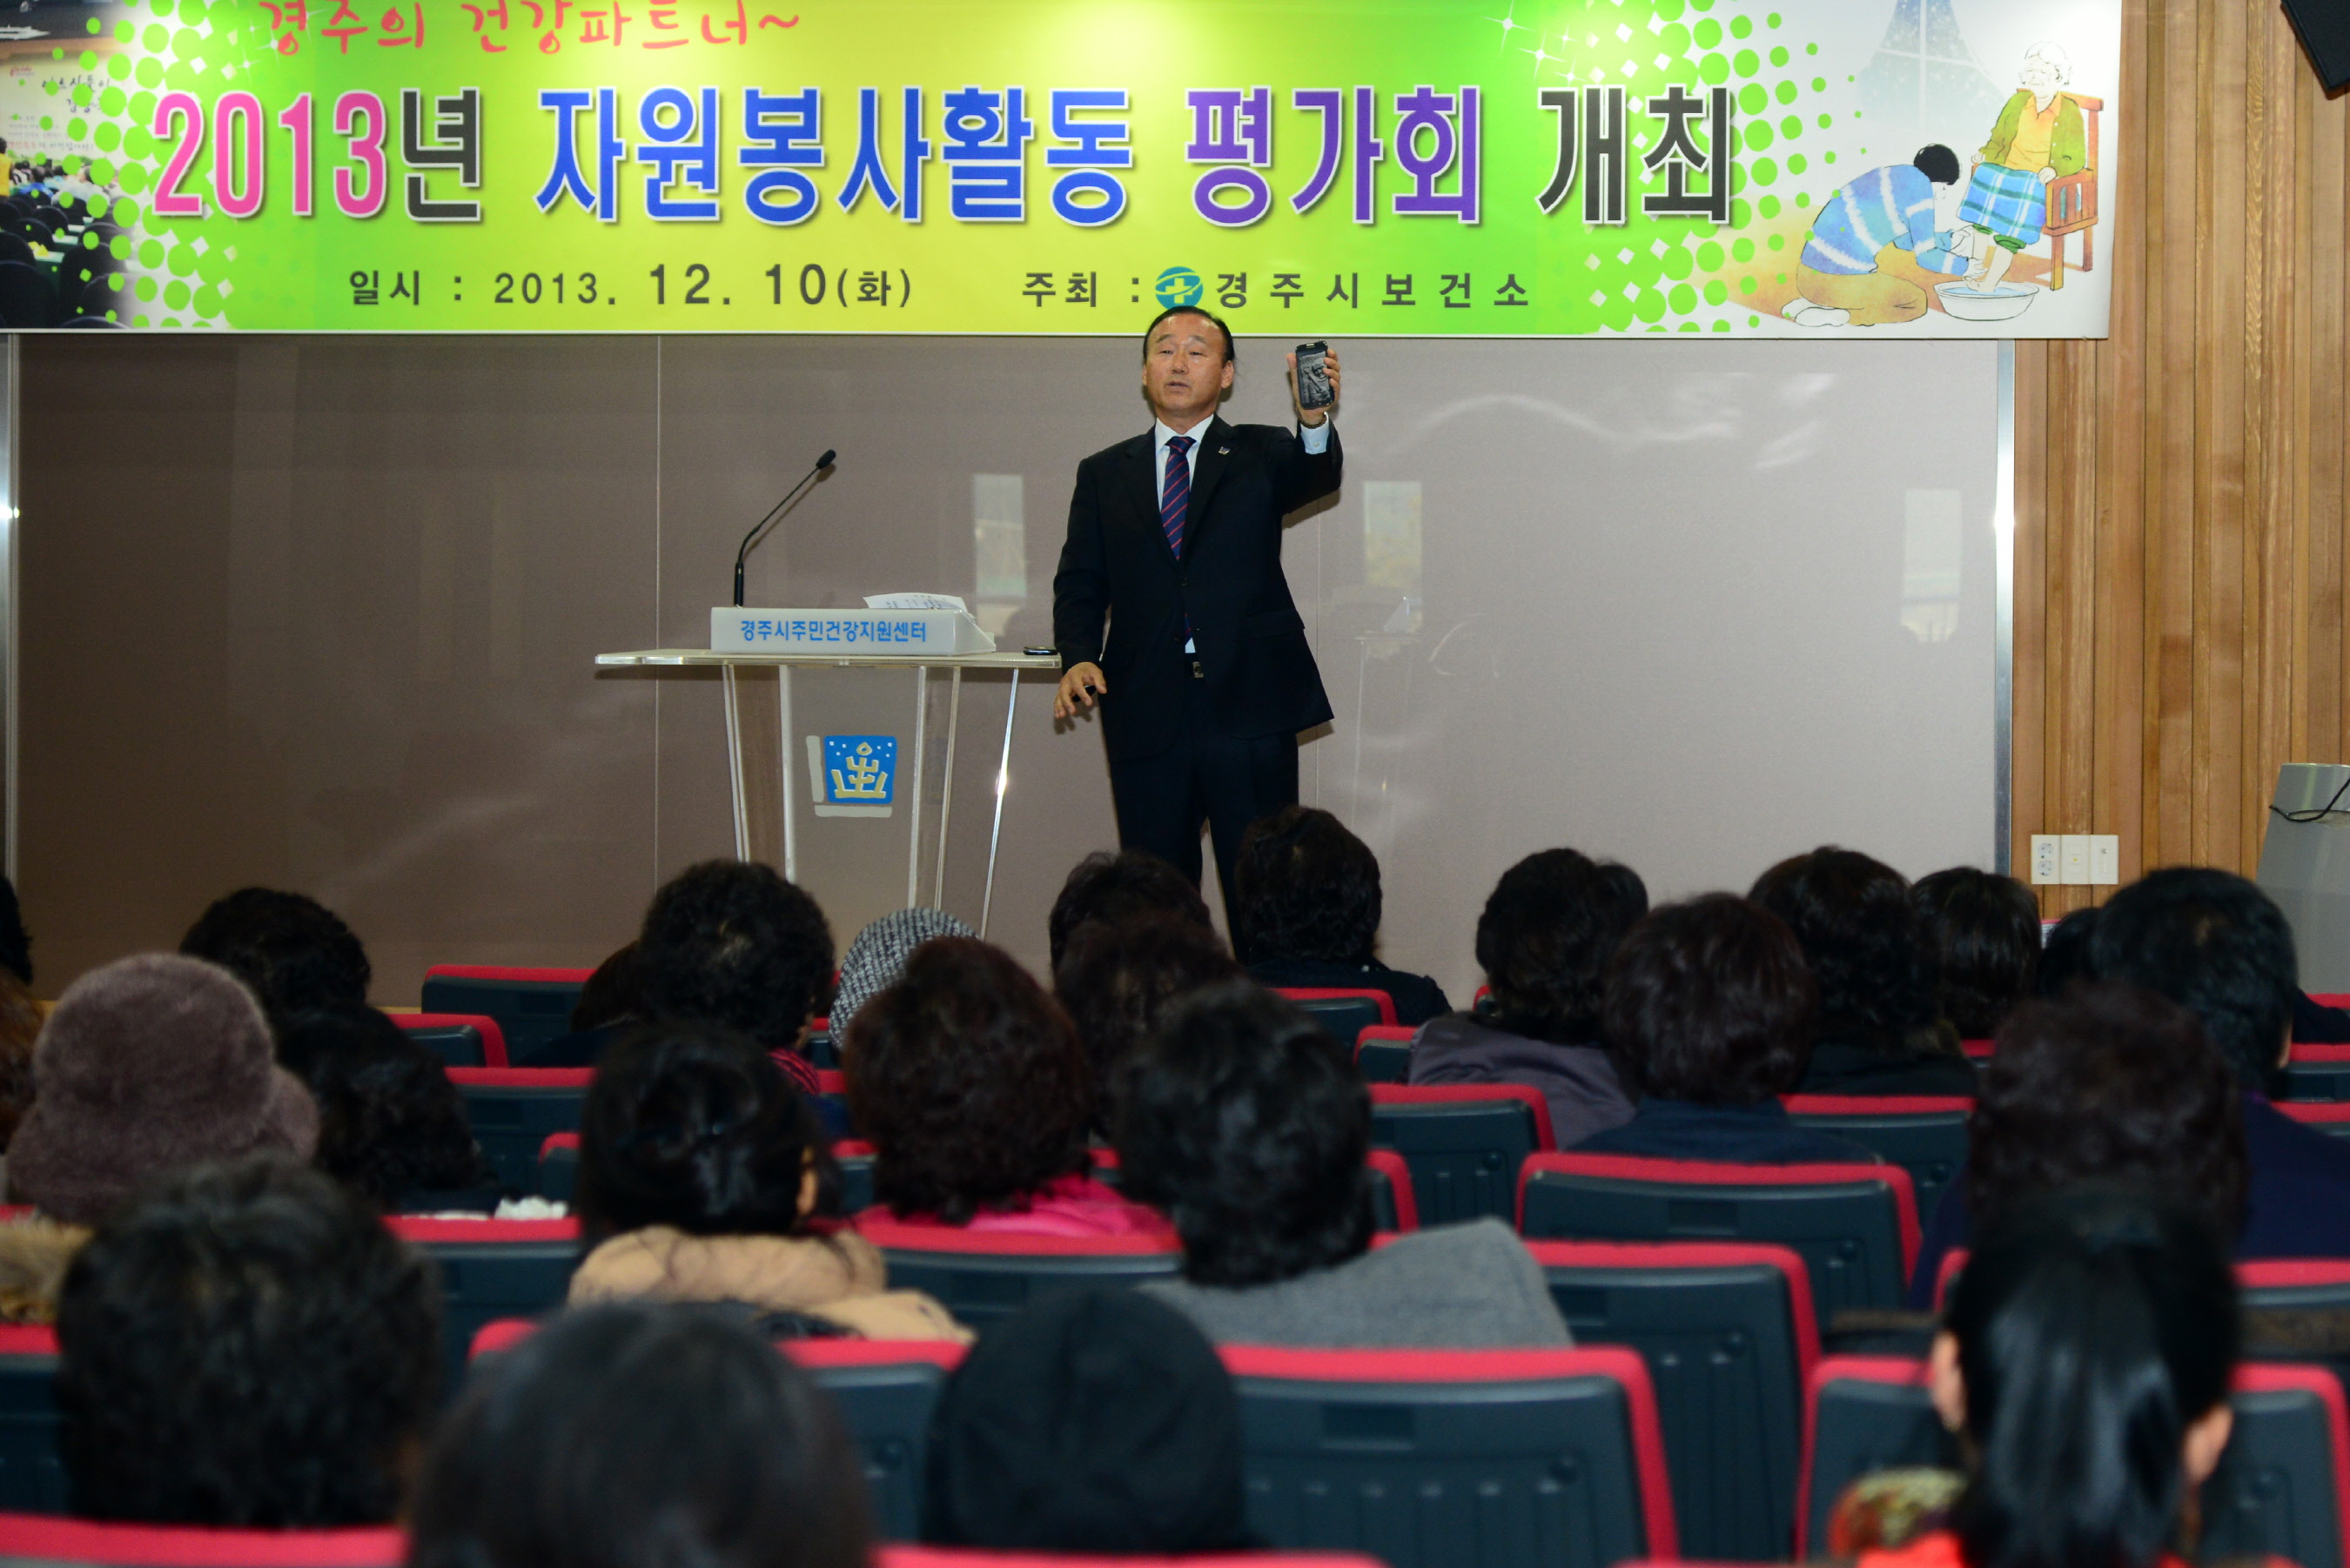 2013년 자원봉사활동 평가회 개최